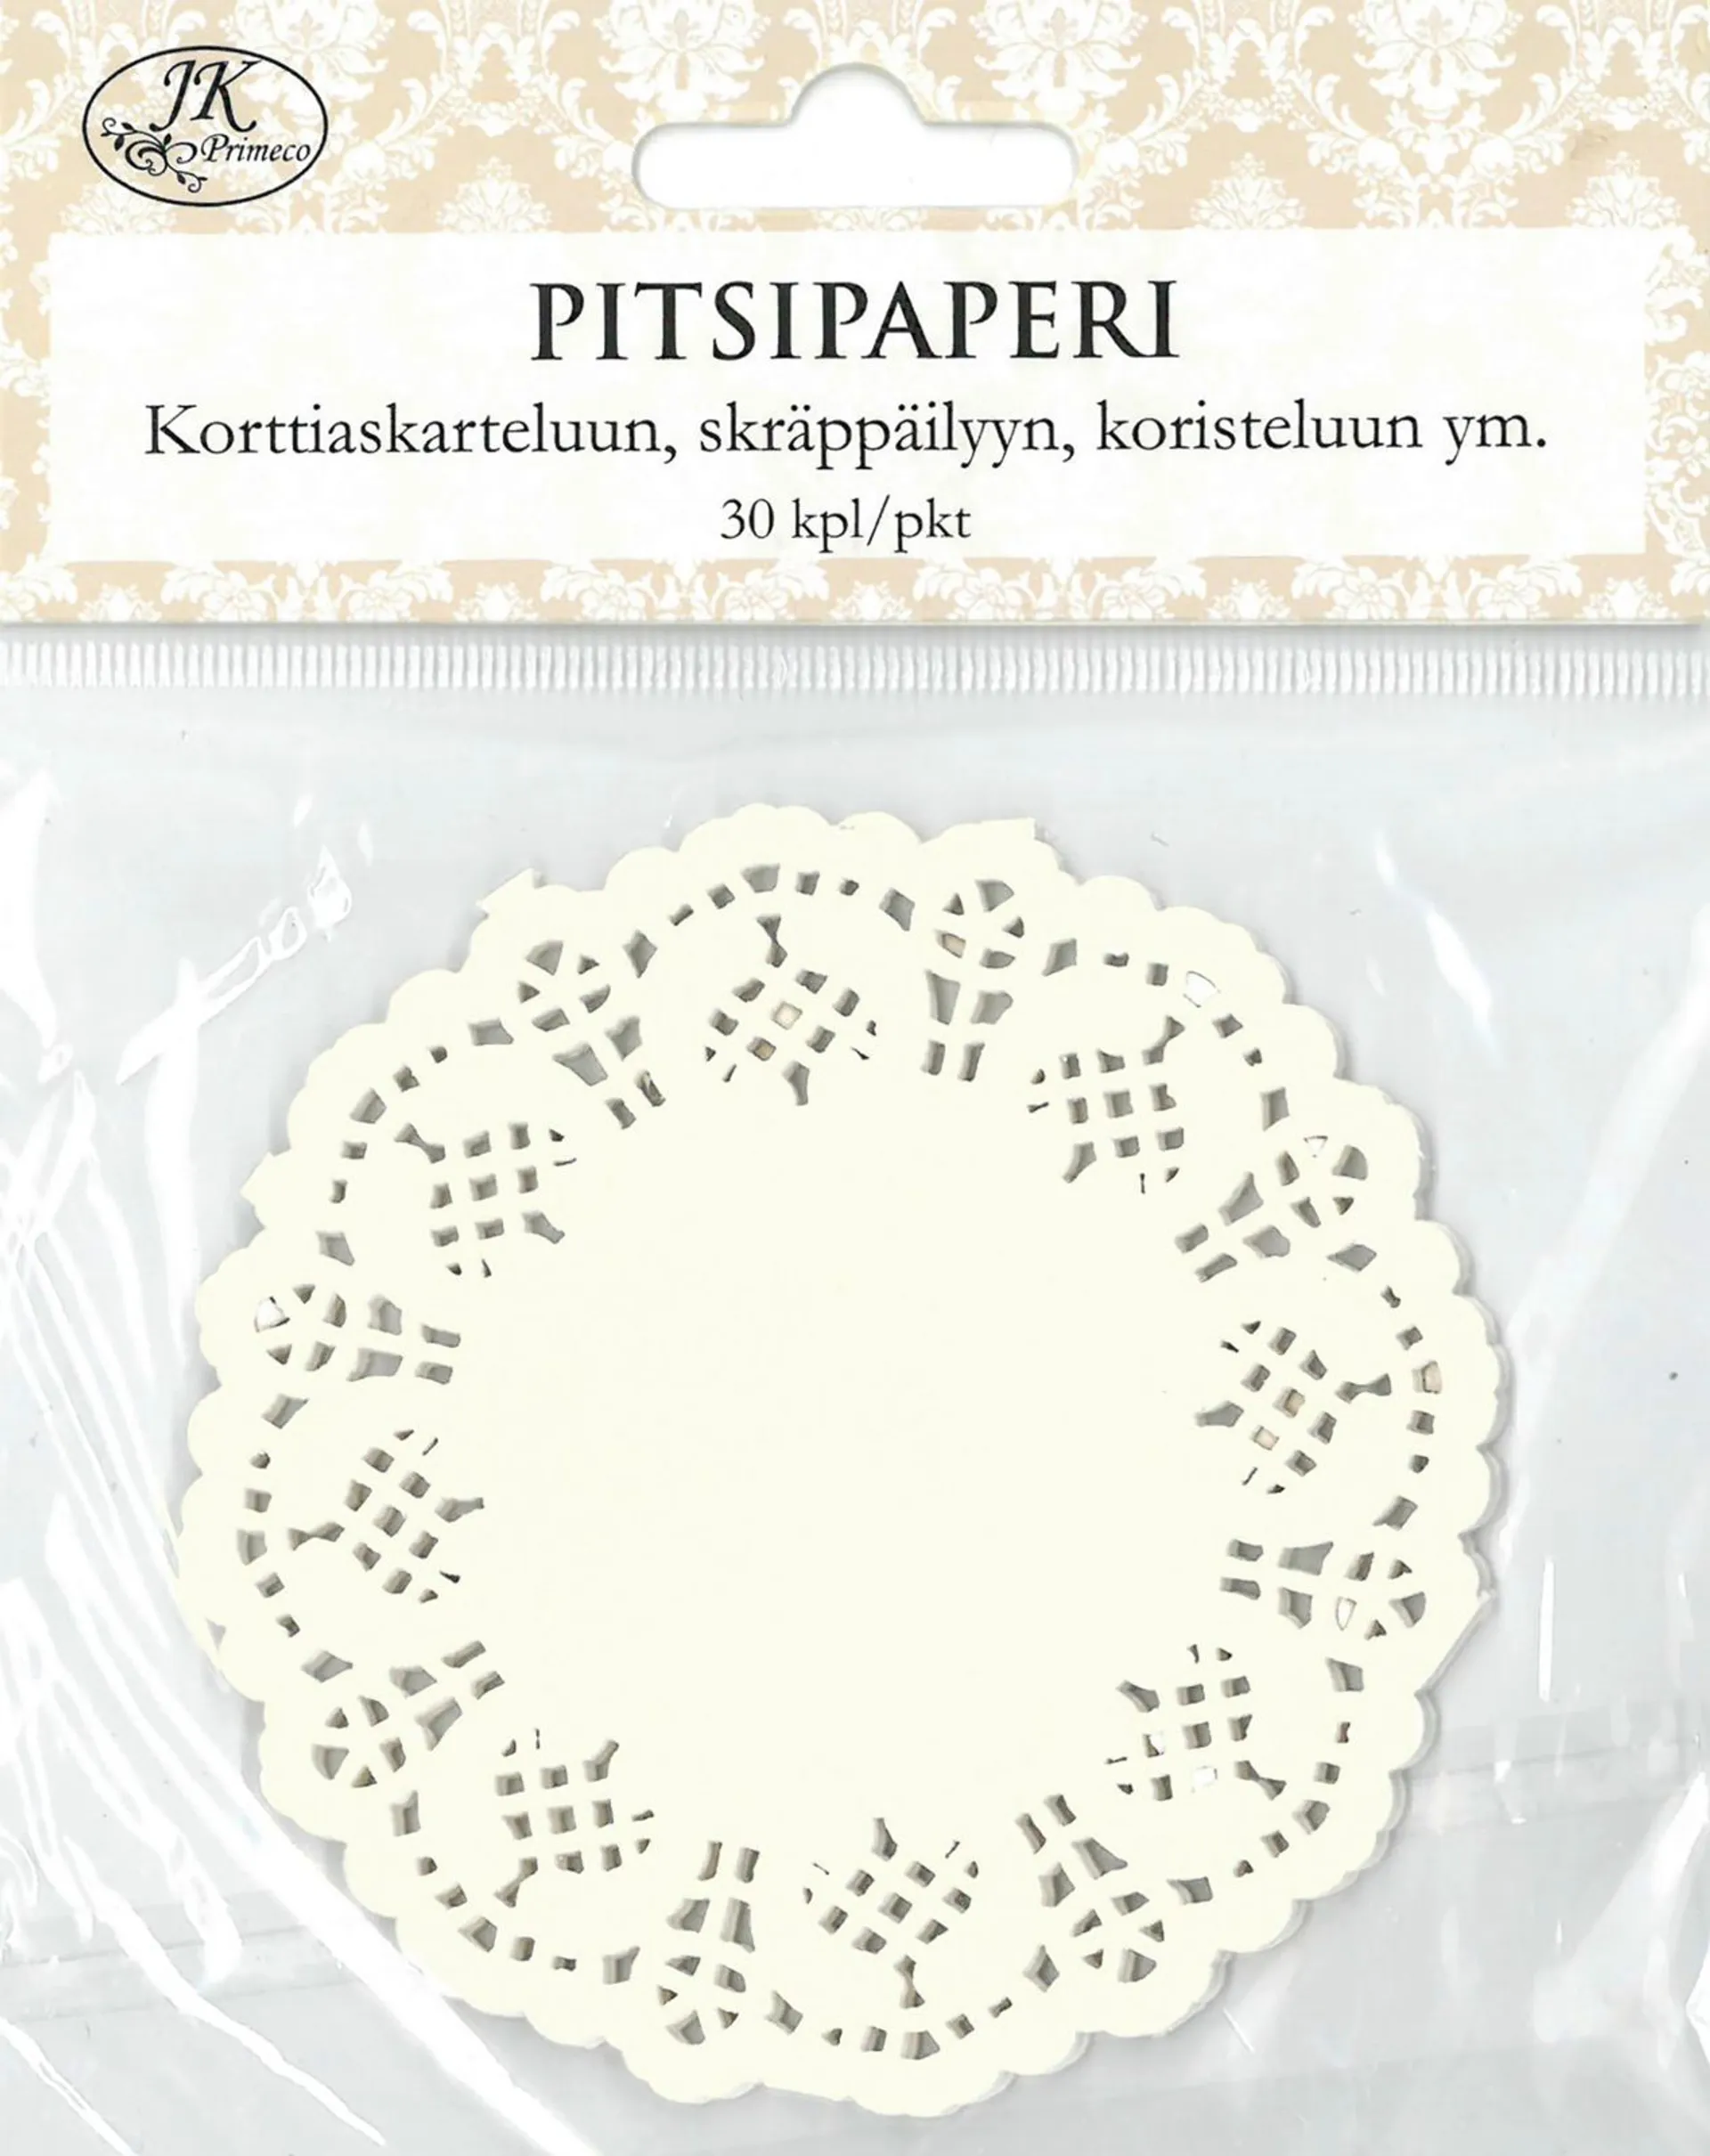 J.K. Primeco pitsipaperi ympyrä valkoinen 30kpl/pkt